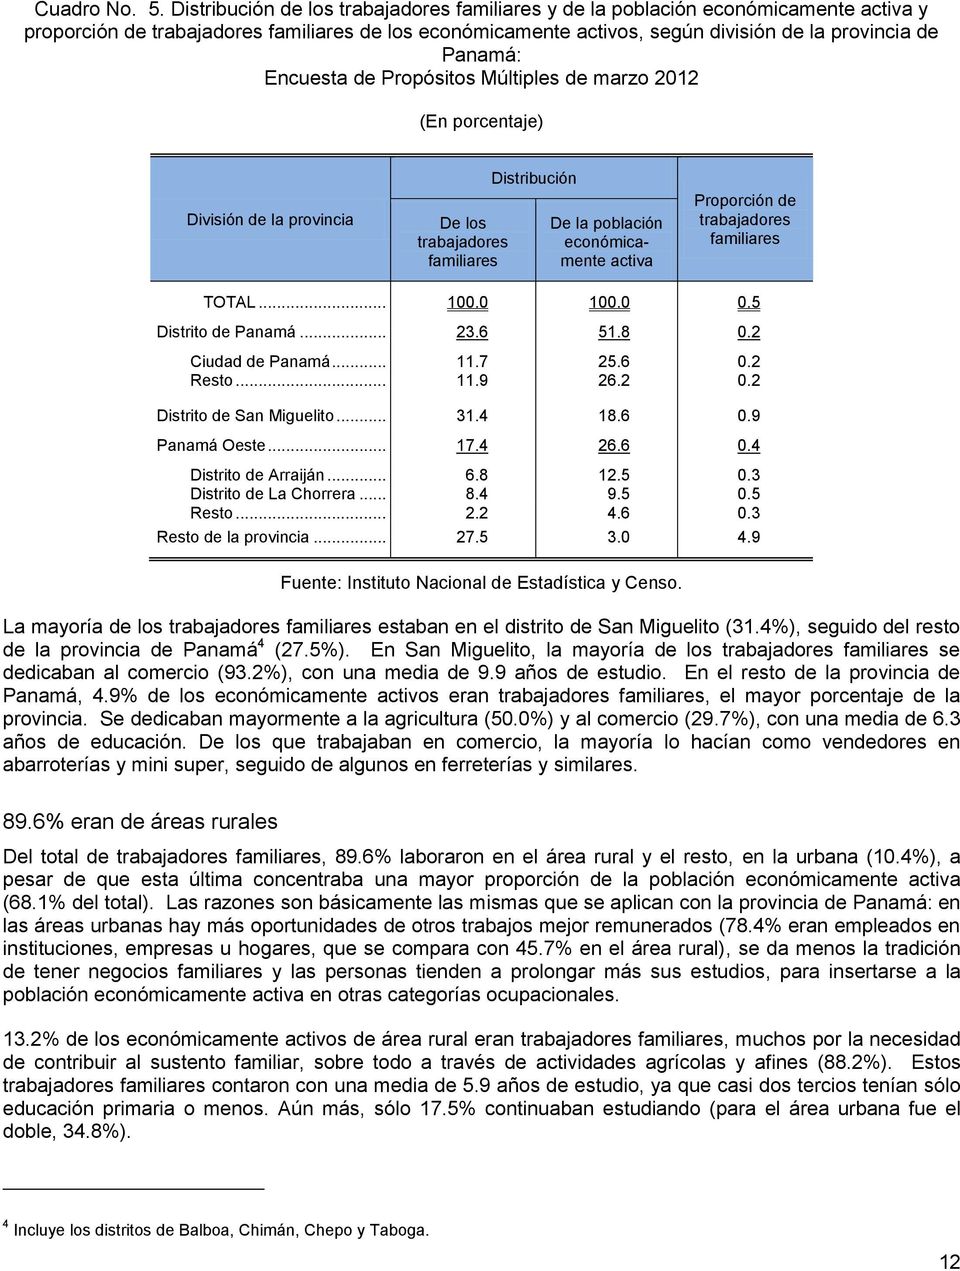 Encuesta de Propósitos Múltiples de marzo 2012 División de la provincia De los trabajadores familiares Distribución De la población económicamente activa Proporción de trabajadores familiares TOTAL.